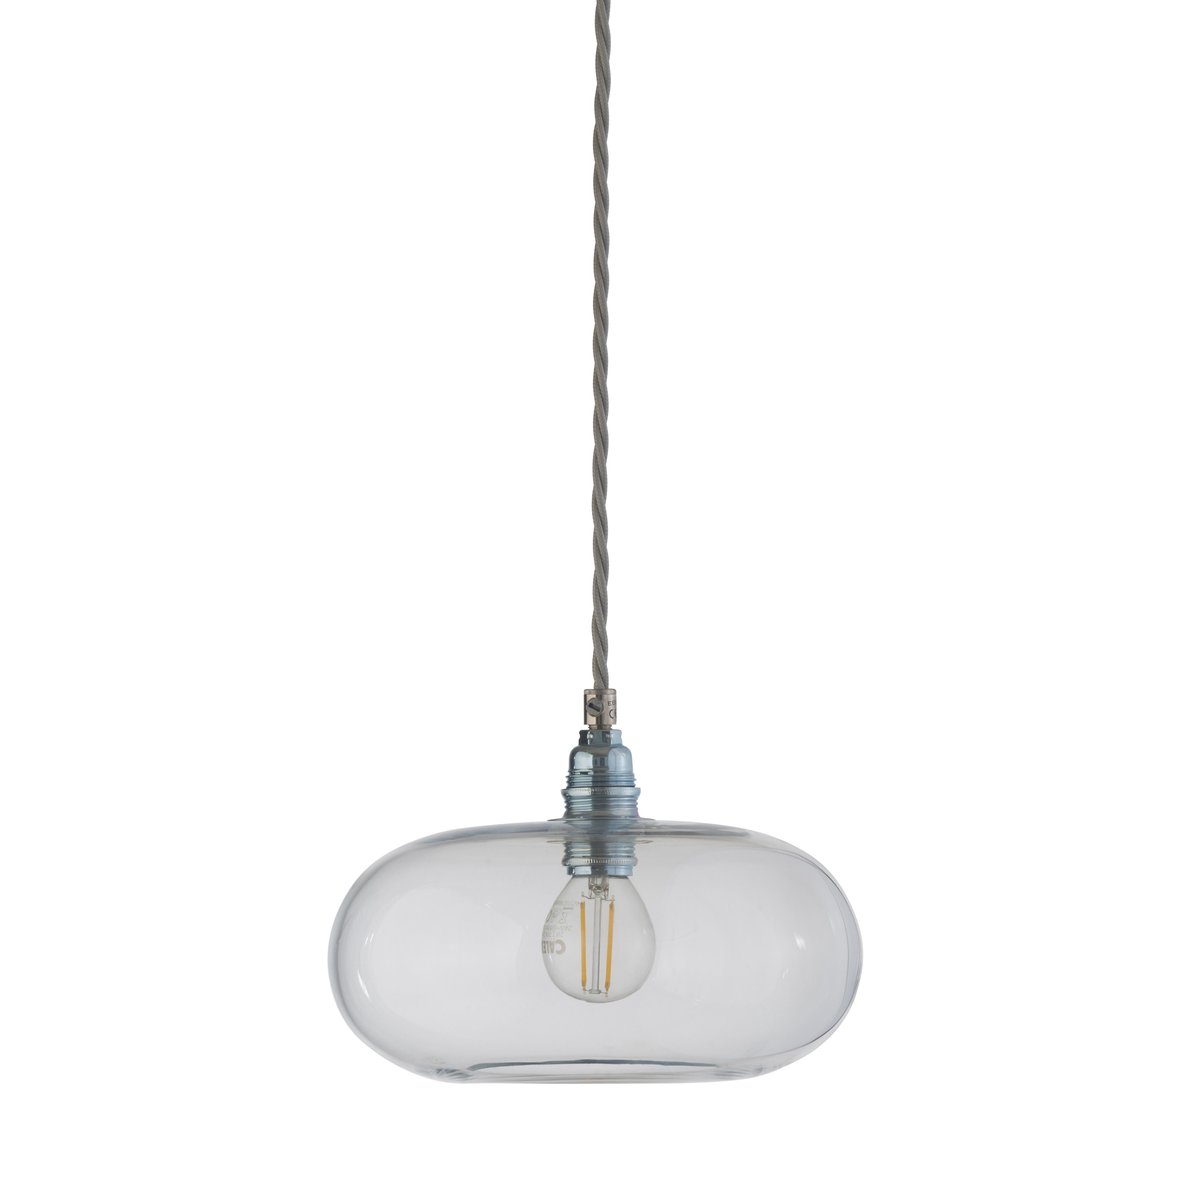 EBB & FLOW Horizon hanglamp Ø 21 cm. helder - zilveren snoer